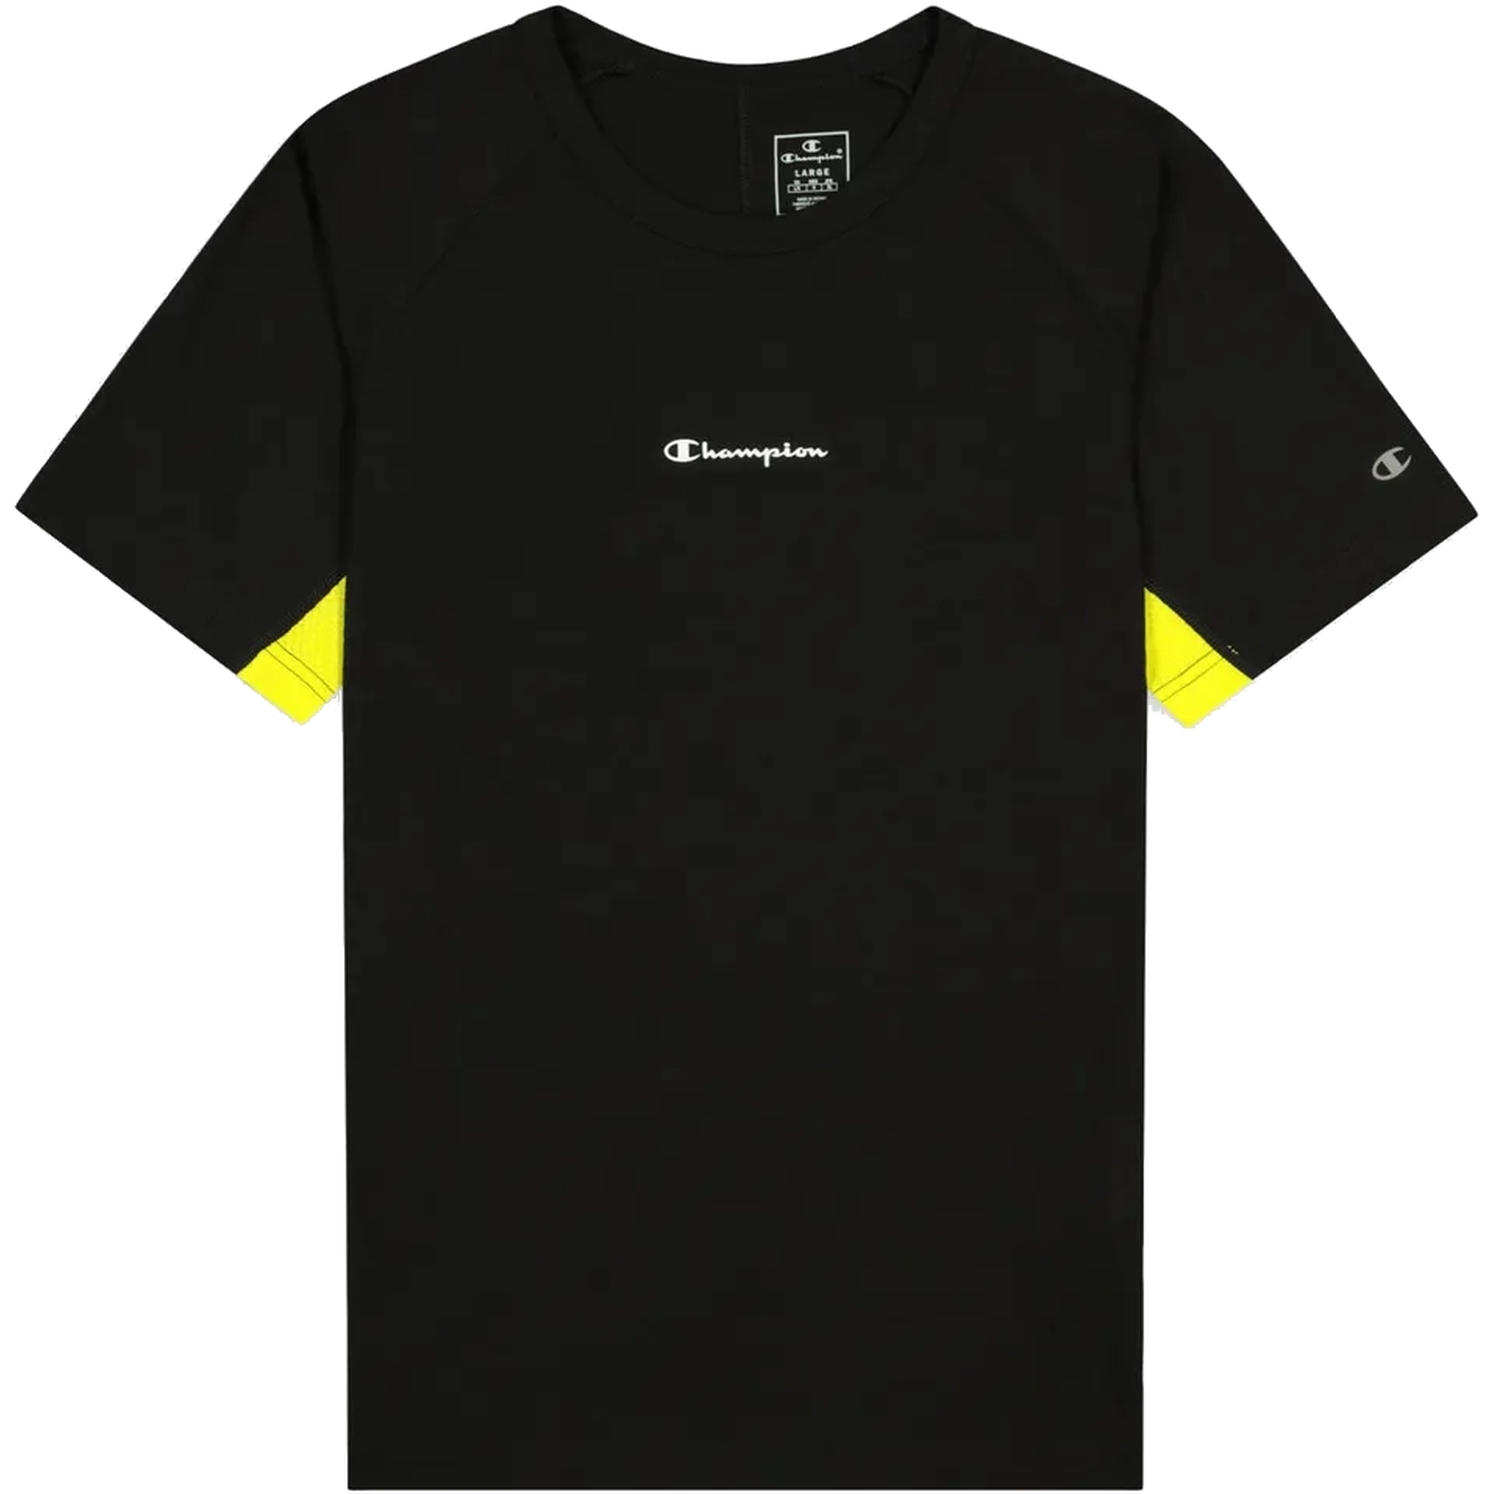 Produktbild von Champion Legacy Institutionals Crewneck T-Shirt 216620 - black